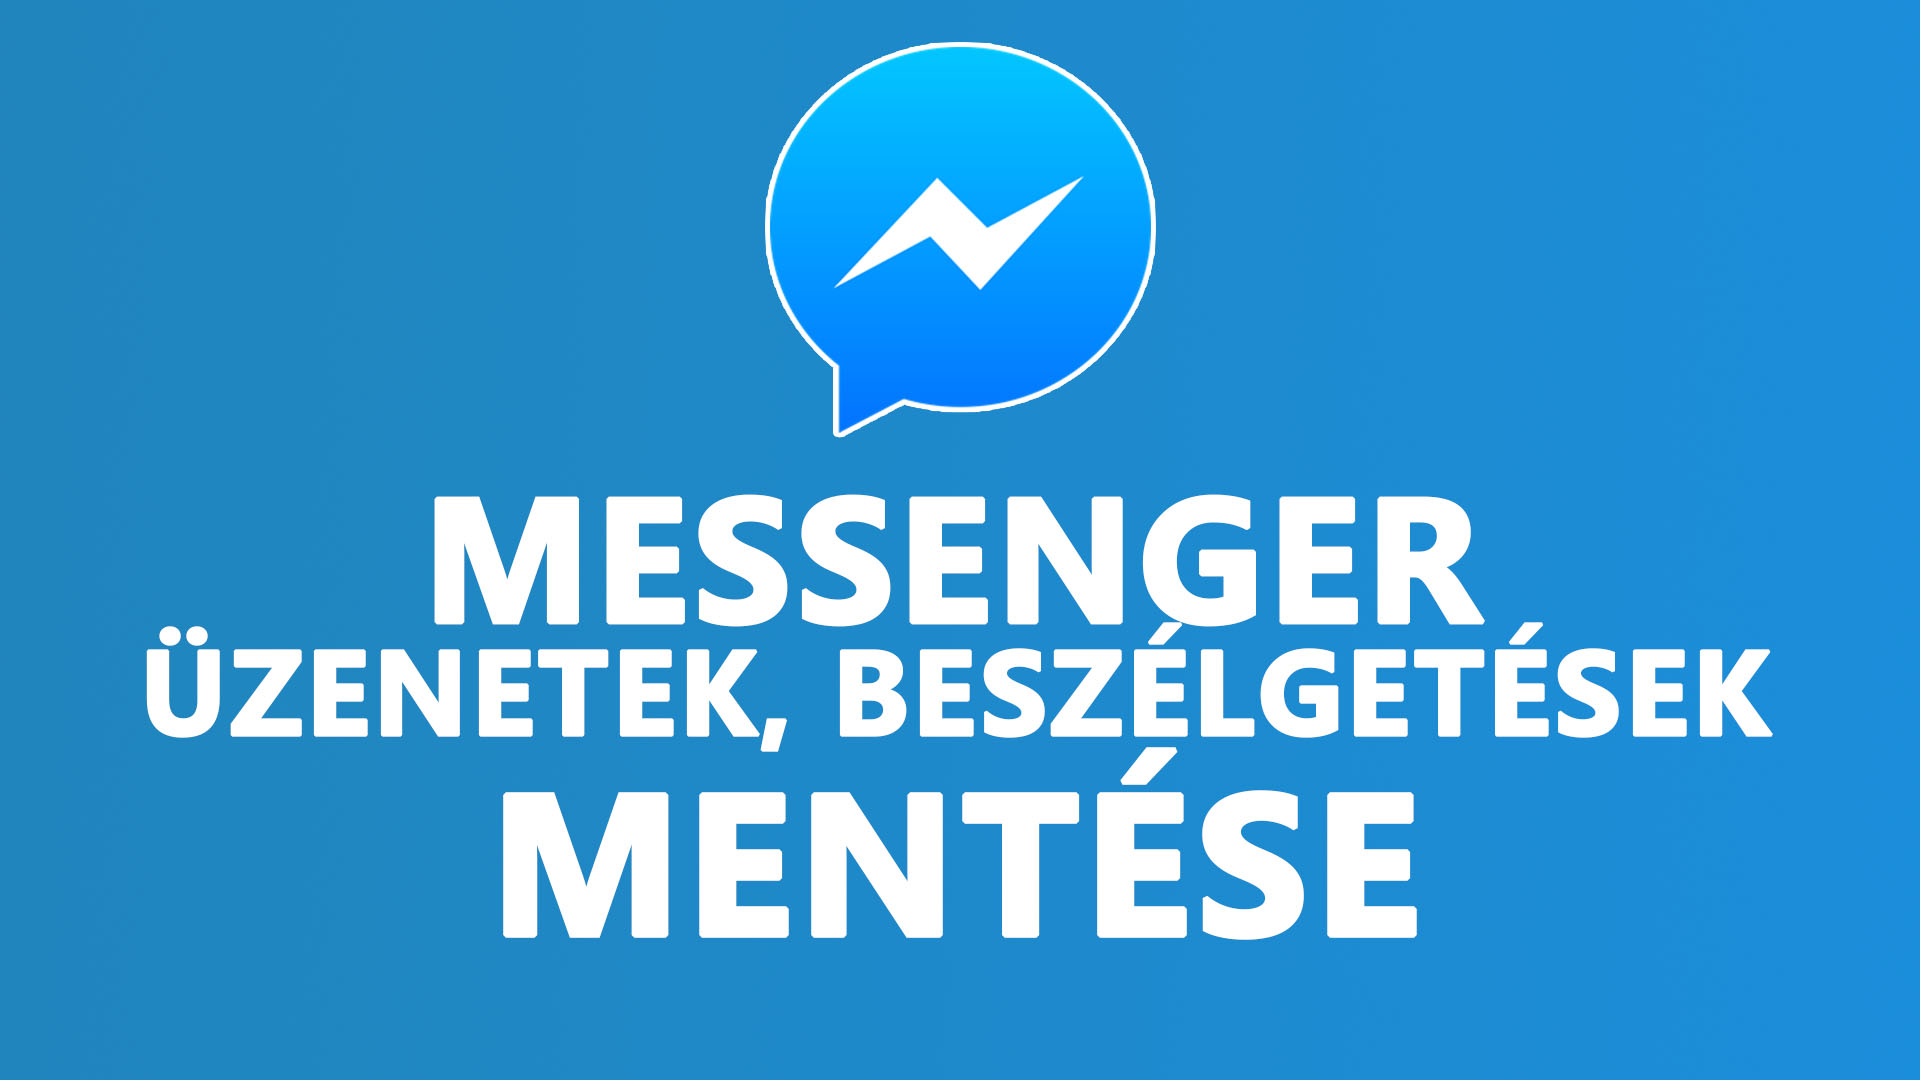 Messenger üzenetek, beszélgetések mentése, elmentése című cikkek nyítóképe